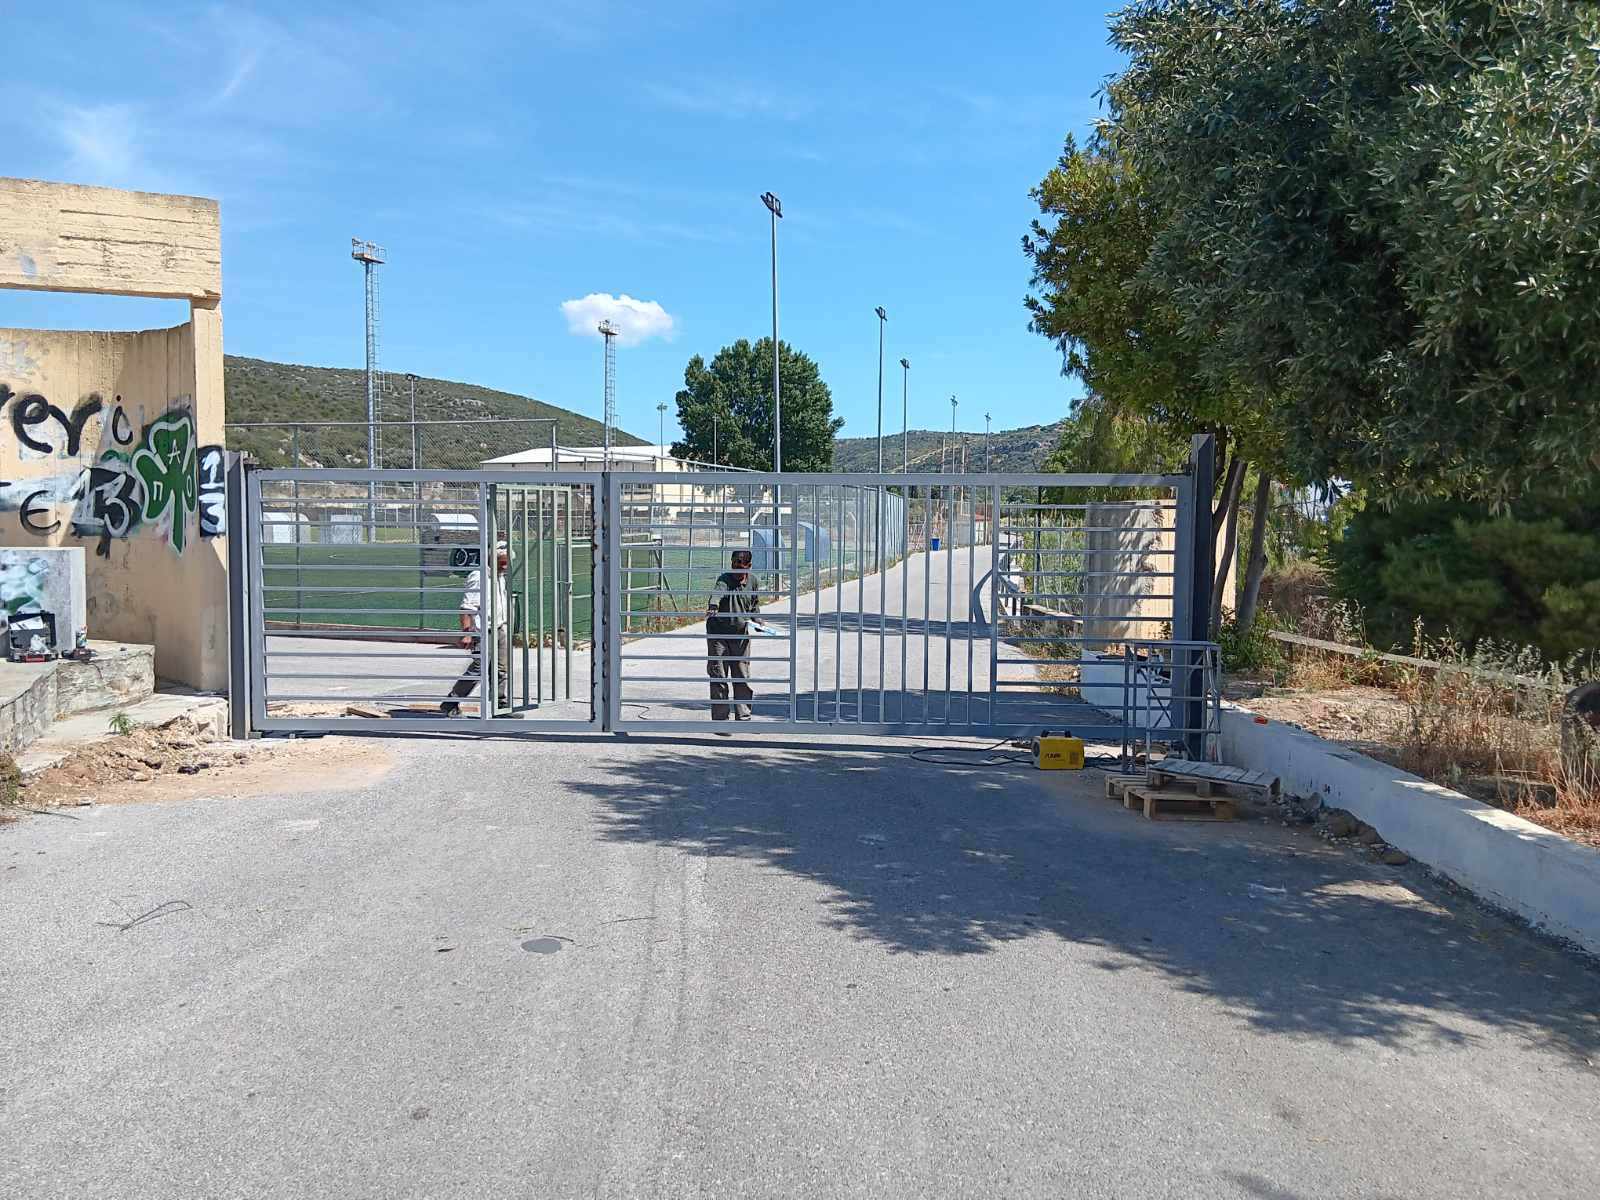 Εύβοια: Ποιες ώρες θα είναι κλειστό το γήπεδο μπάσκετ στο Αλιβέρι